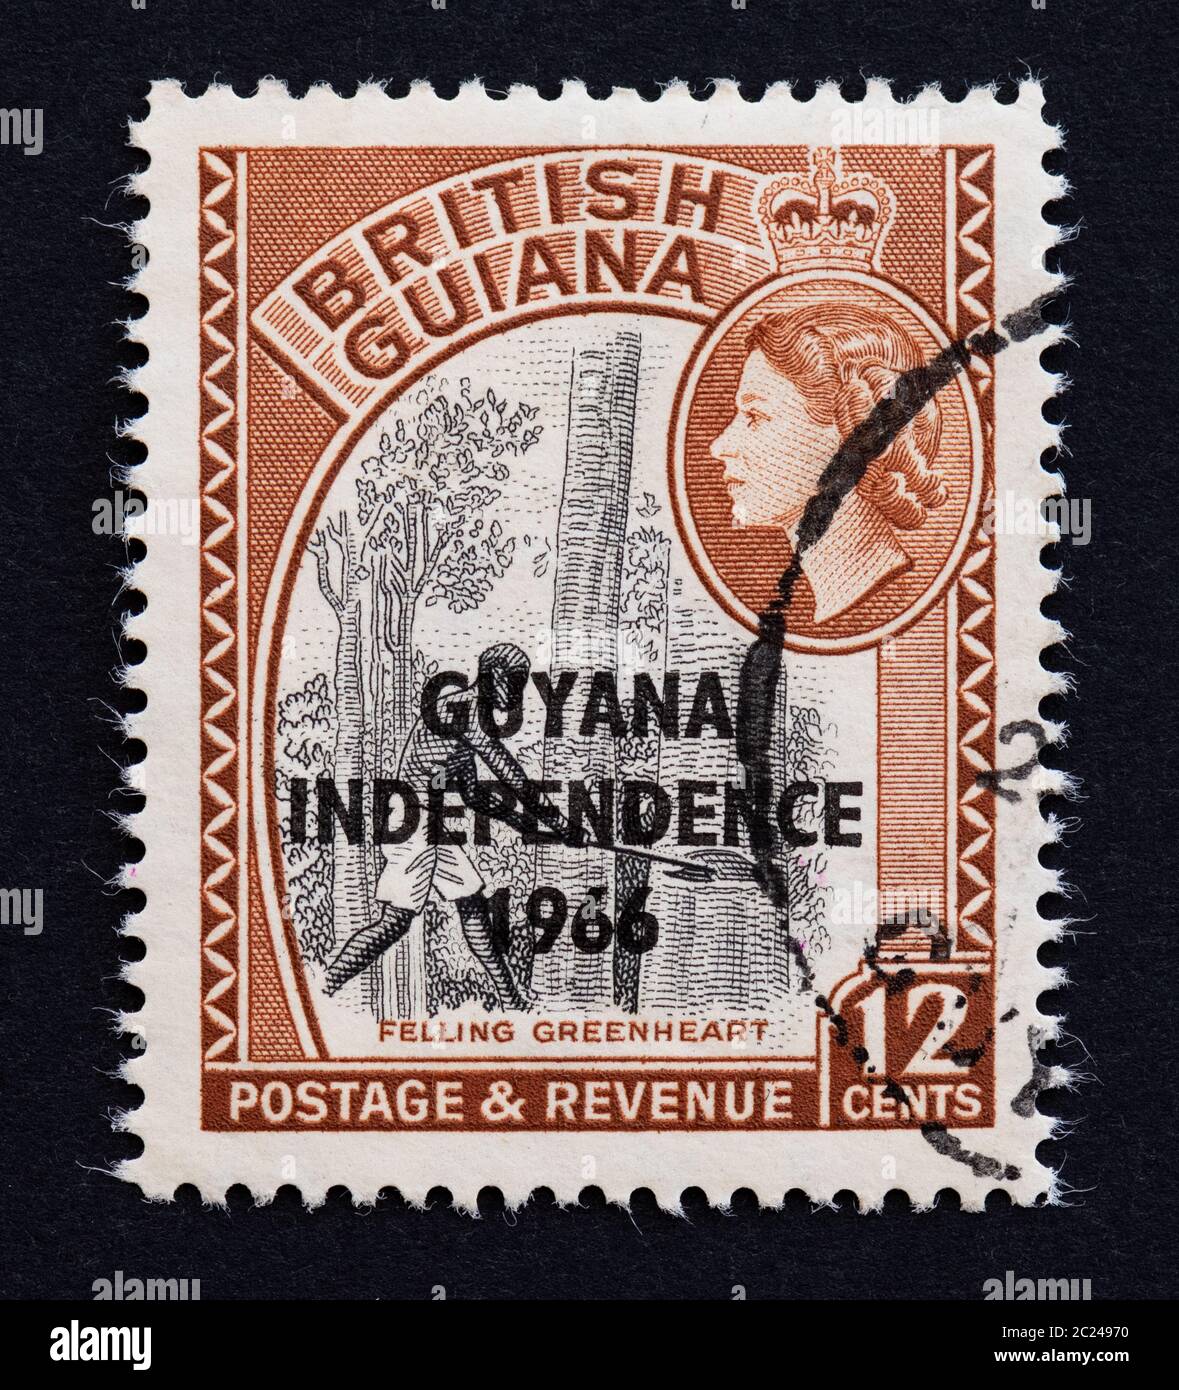 British Guiana Stempel mit Guyana Independence 1966 überdruckt - zeigt das Fällen von grünem Herz oder Chlorocard rodei Pflanze Stockfoto